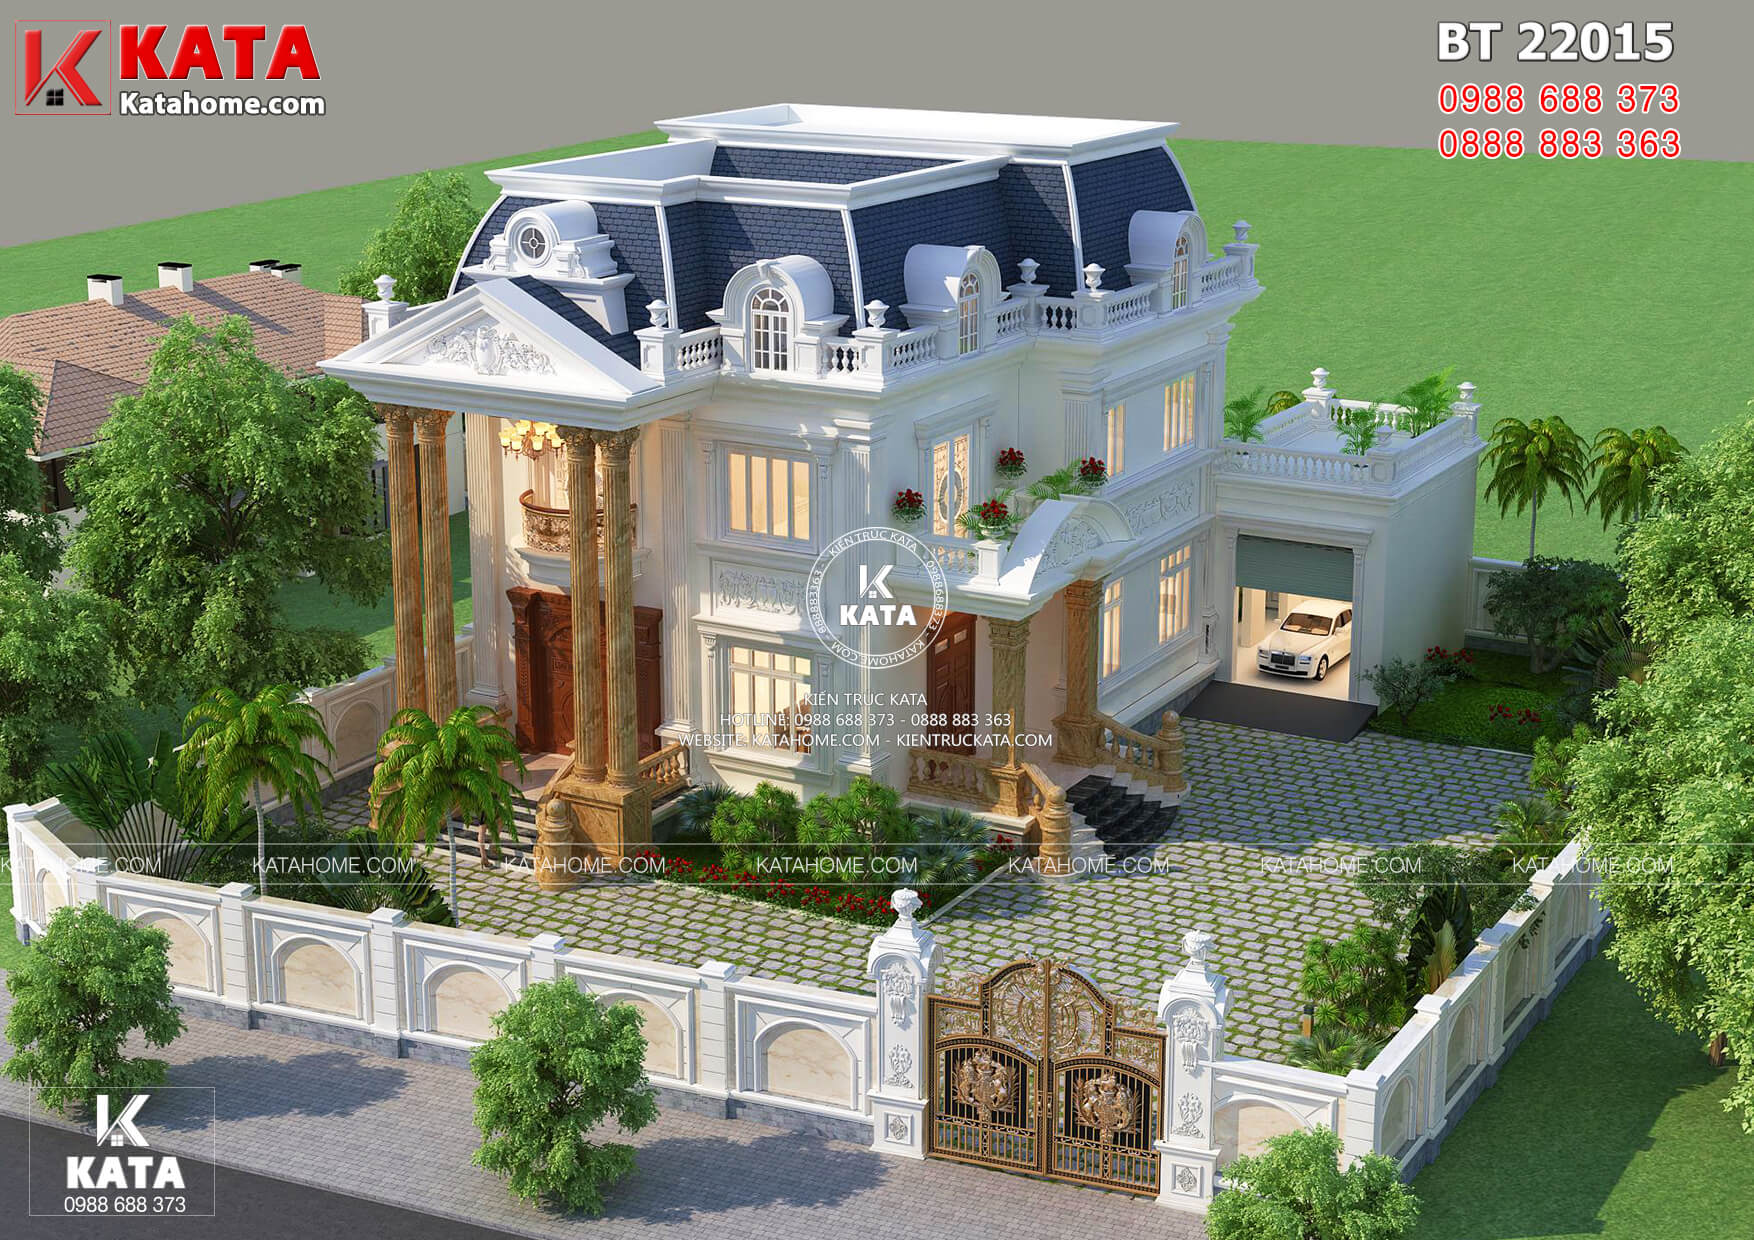 Thiết kế biệt thự tân cổ điển nhẹ nhàng tại Hà Nội _ Mã số: 22015